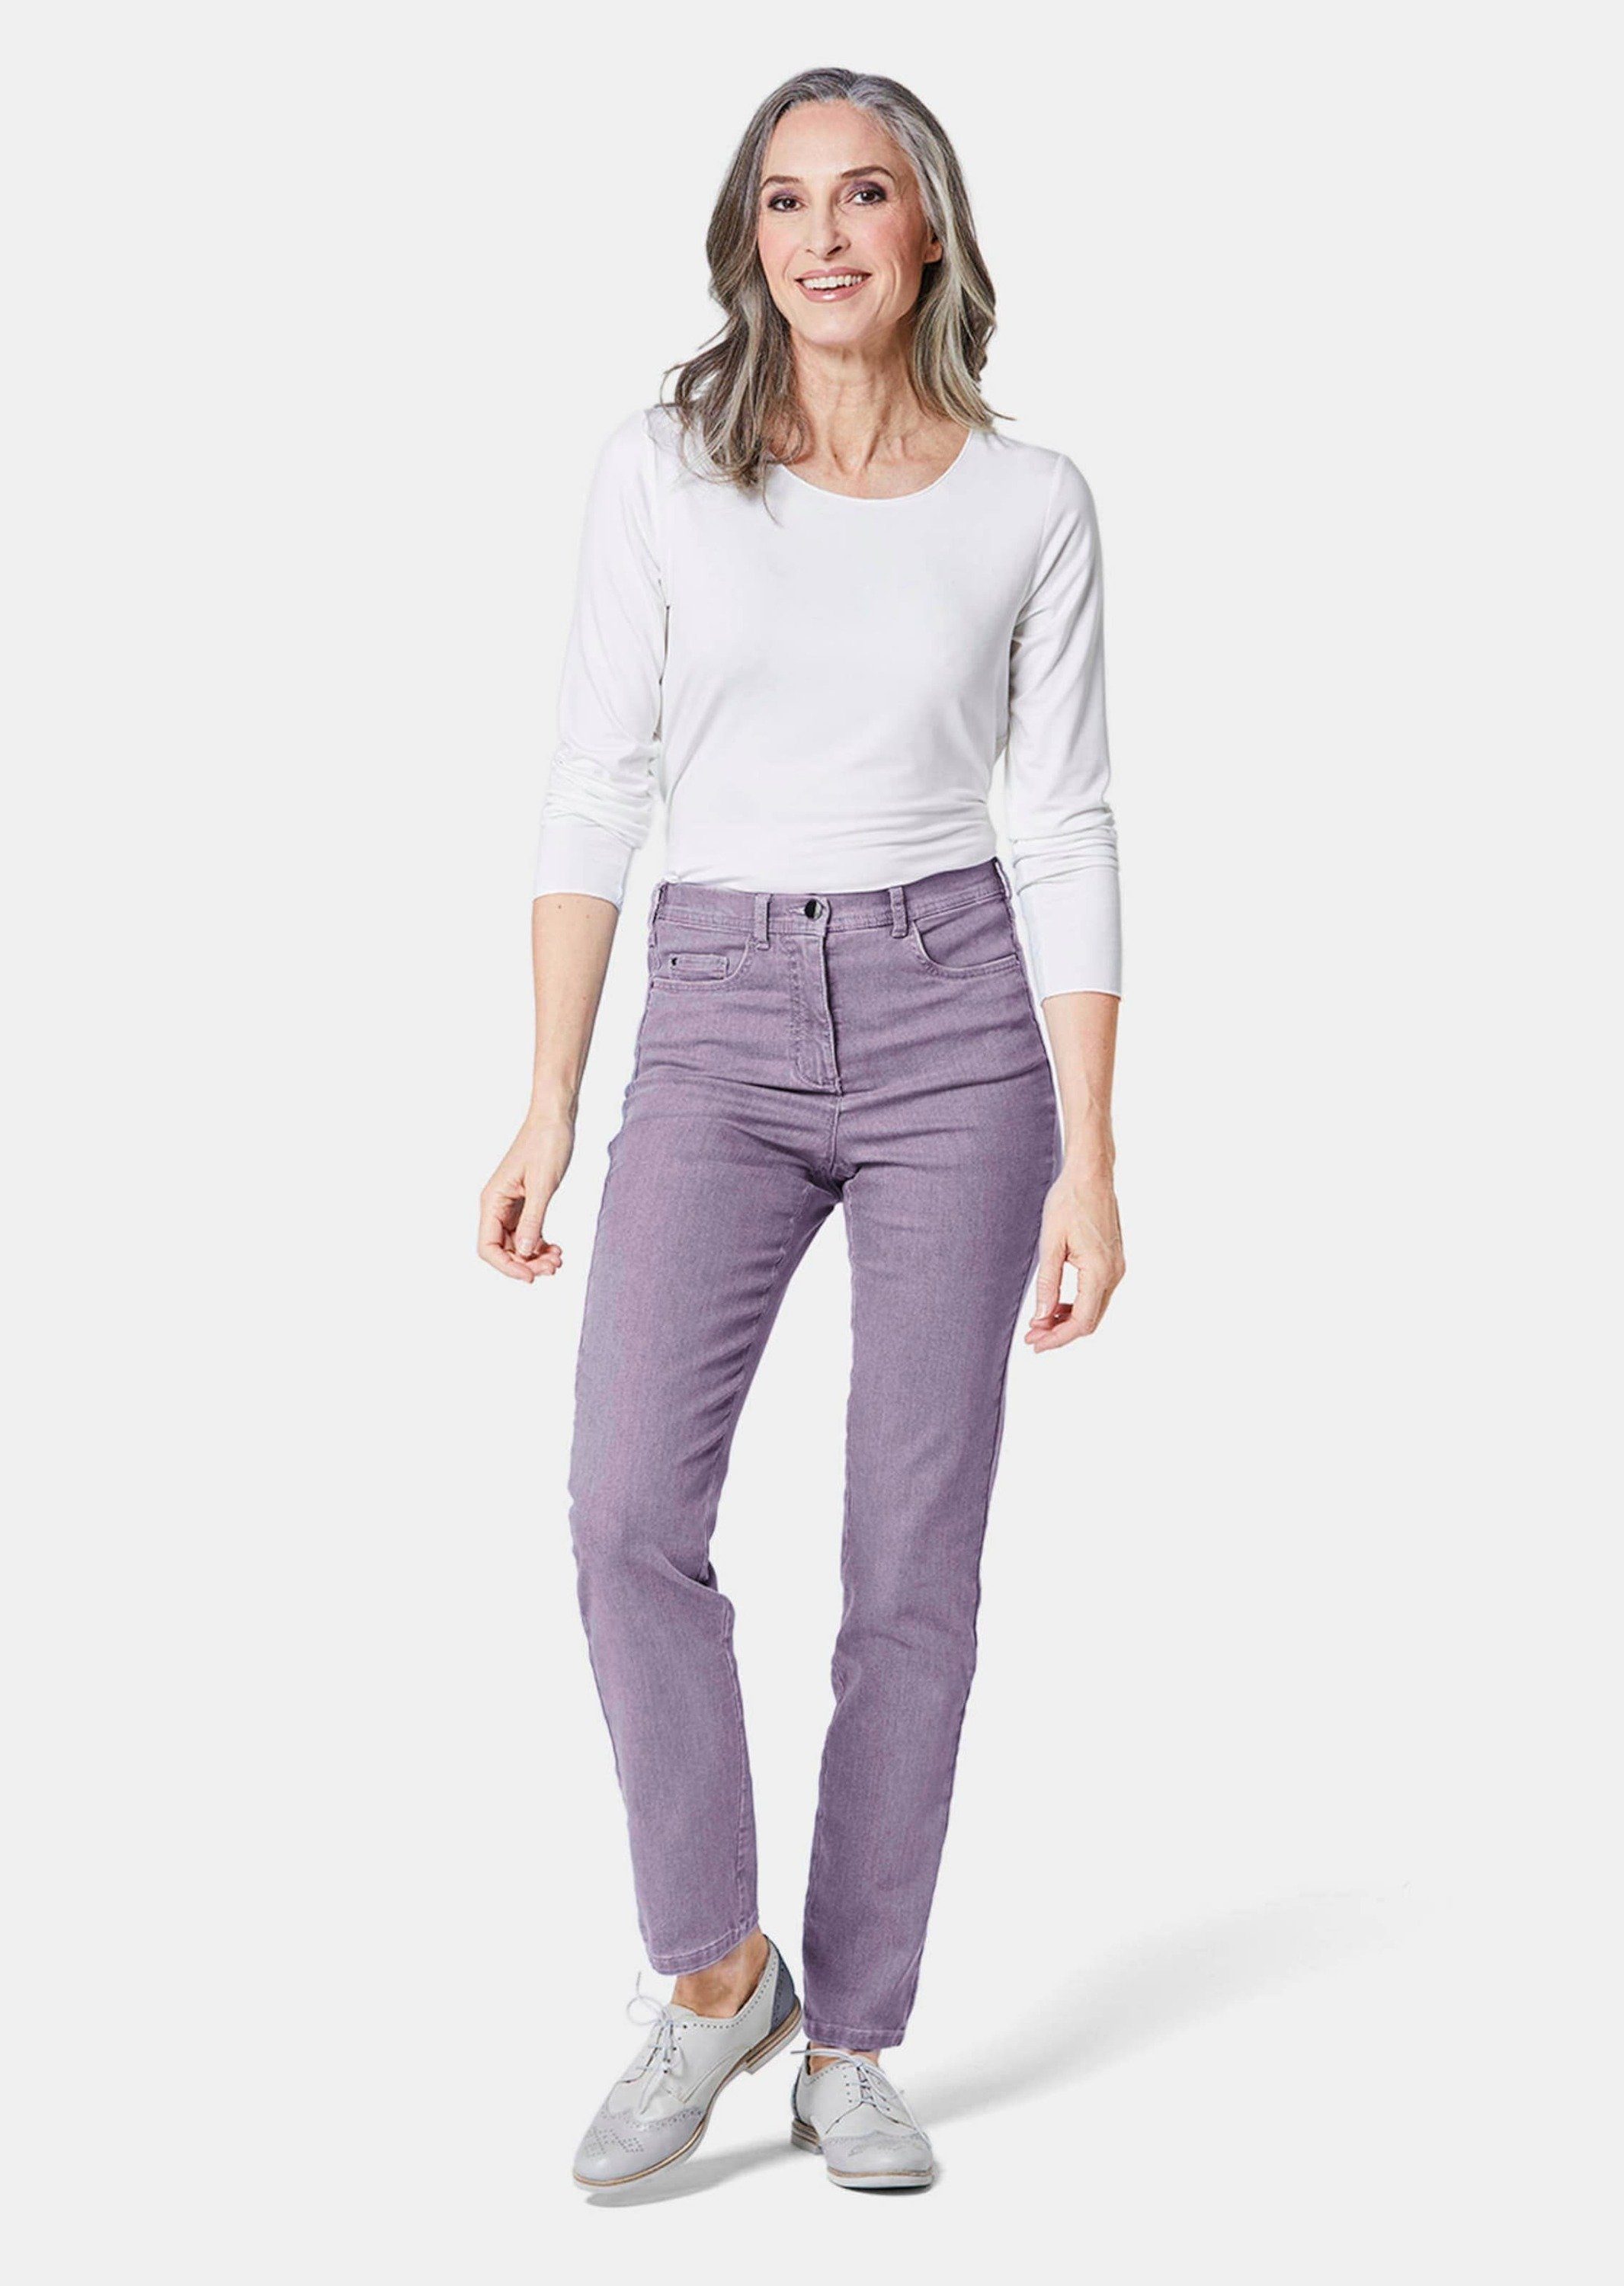 GOLDNER Bequeme Jeans Kurzgröße: lavendel High-Stretch-Jeanshose Bequeme